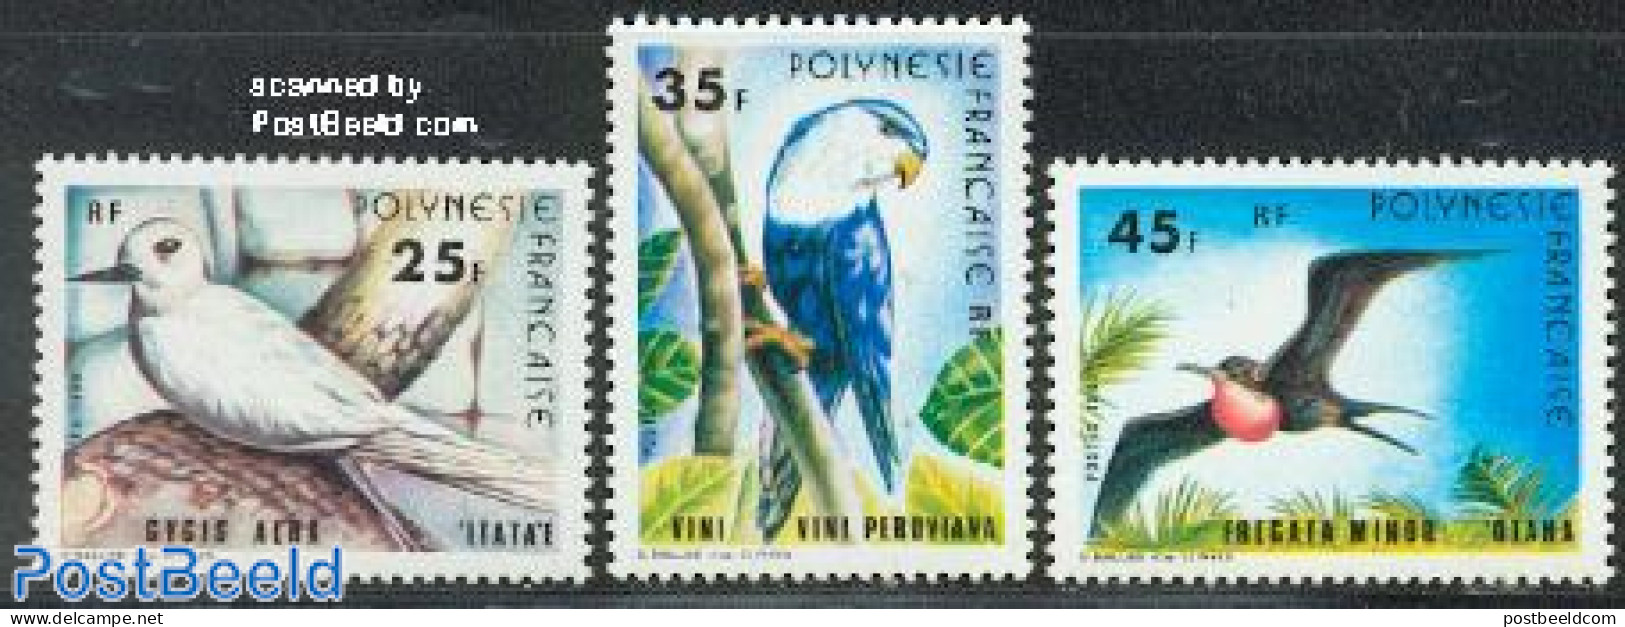 French Polynesia 1980 Birds 3v, Mint NH, Nature - Birds - Ungebraucht